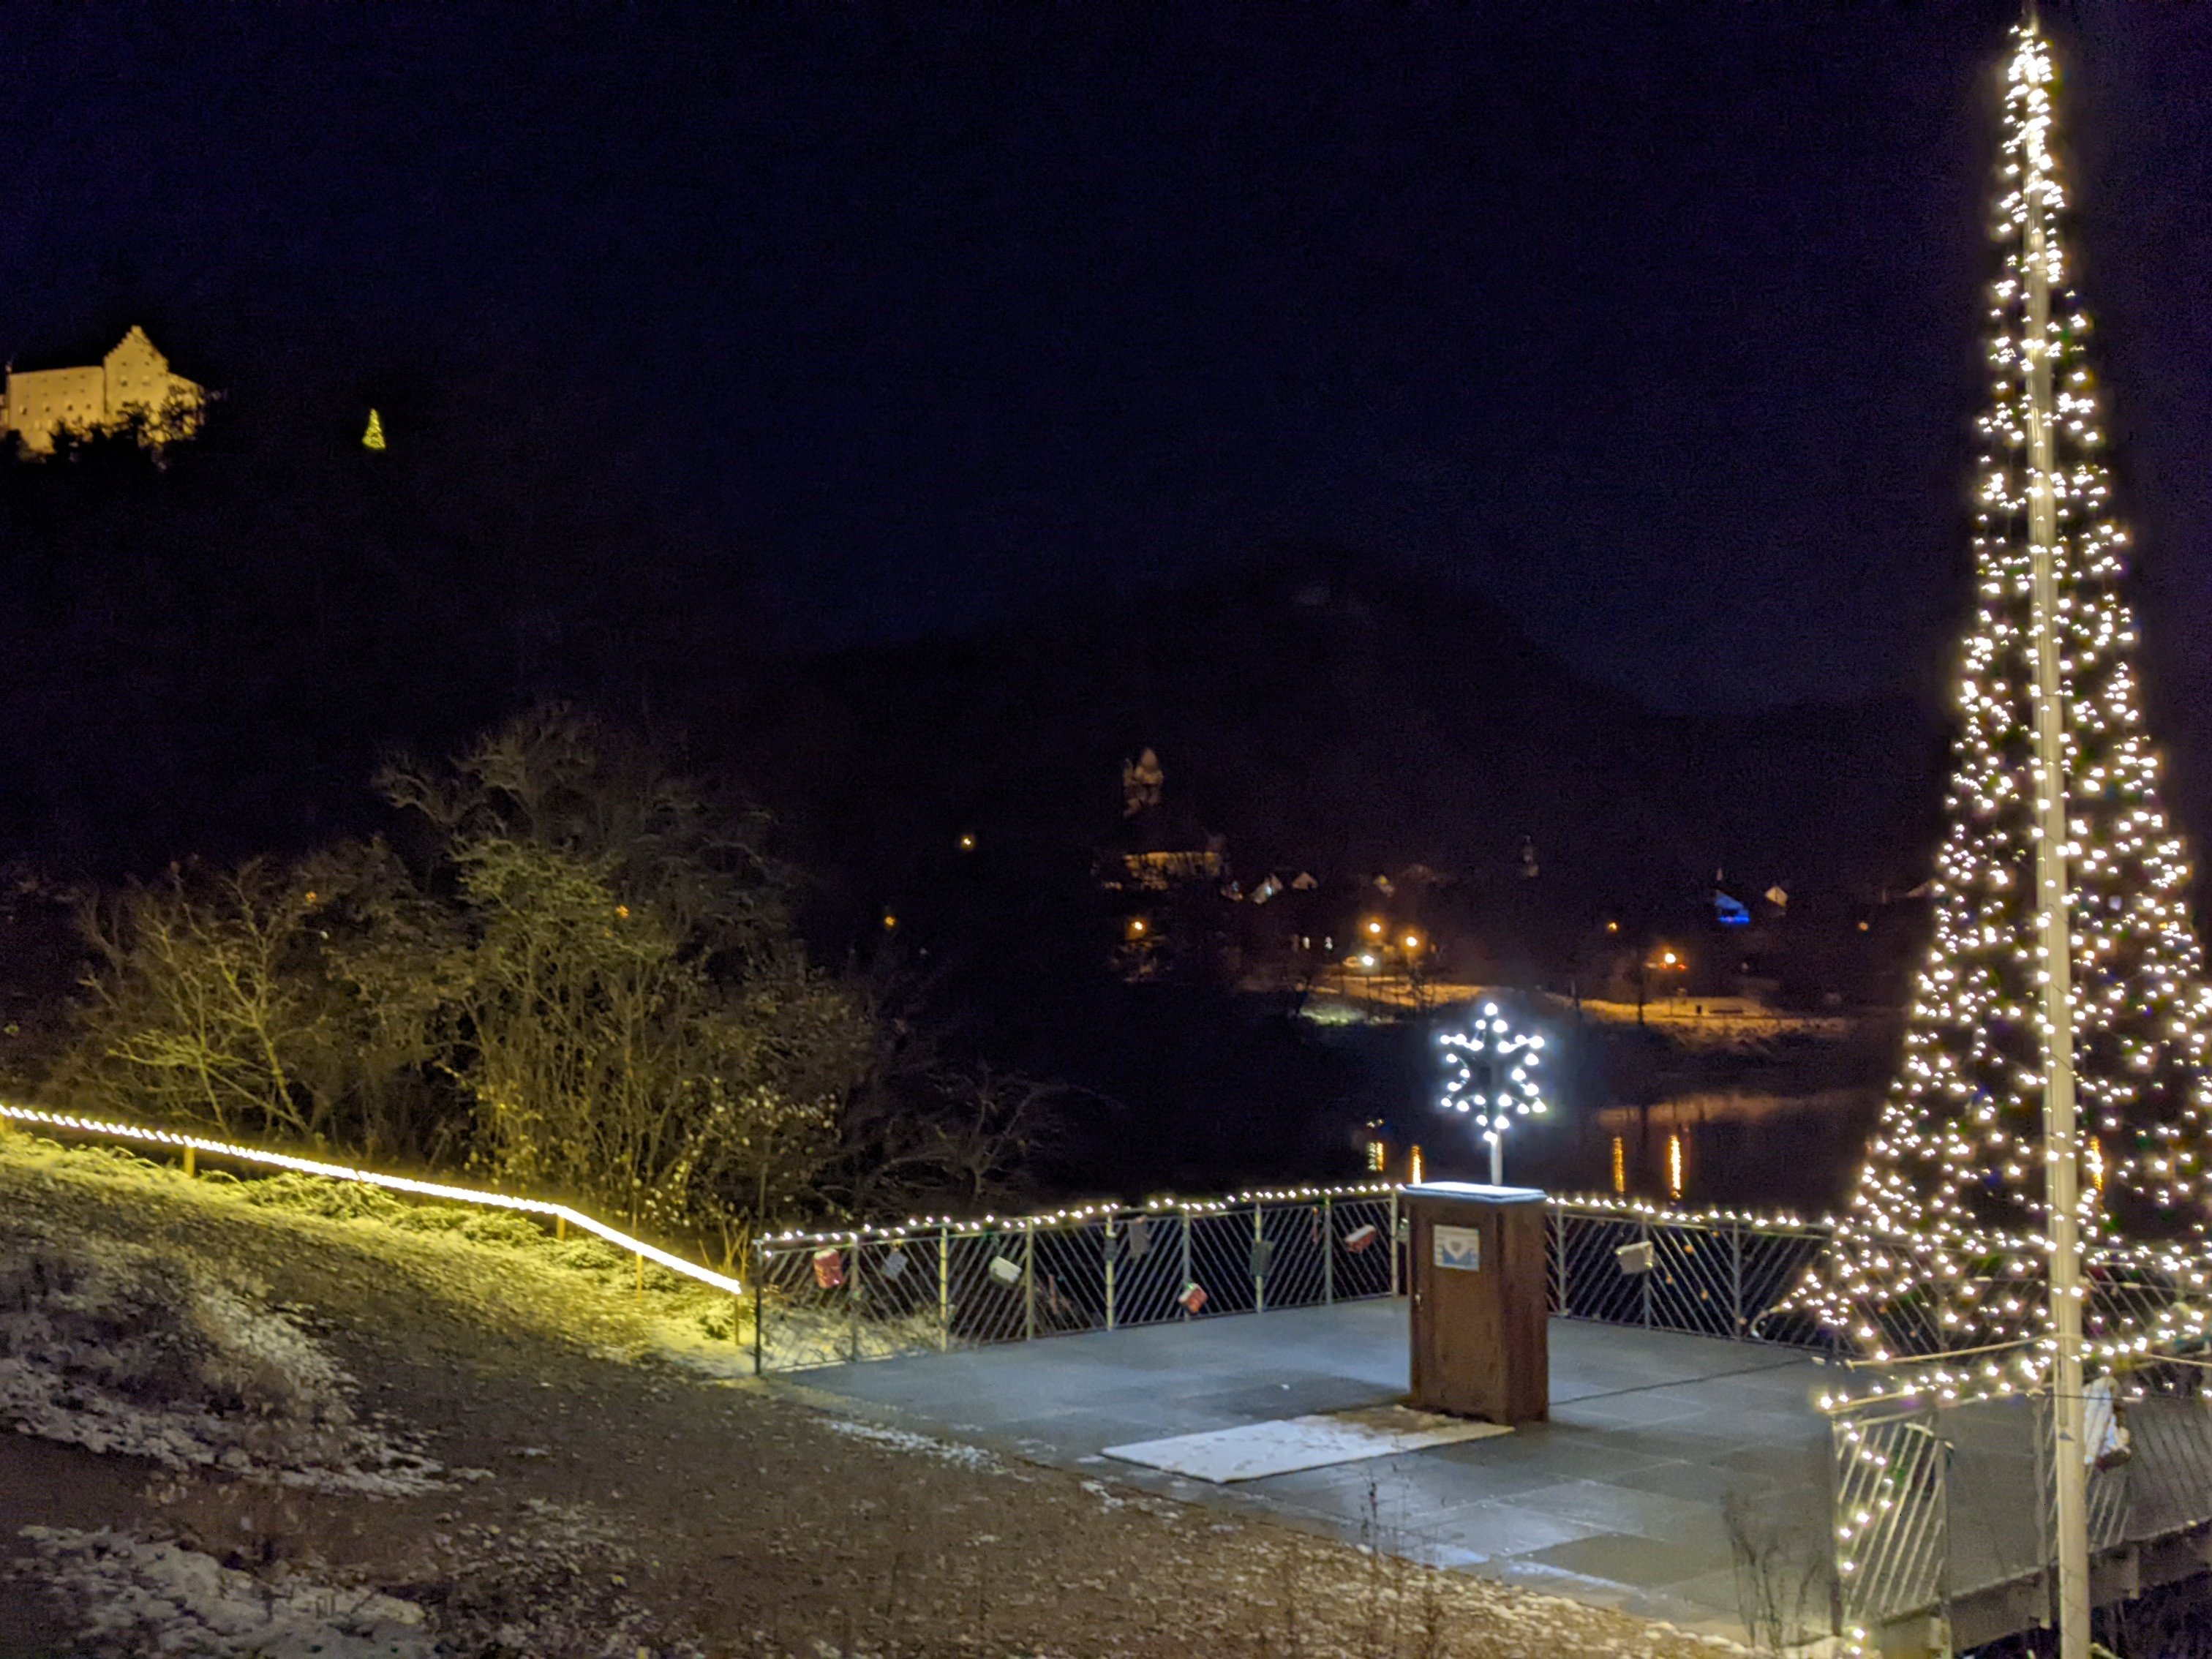 Auf diesem Bild sieht man die weihnachtlich geschmückte Seebühne mit Wunschschrank